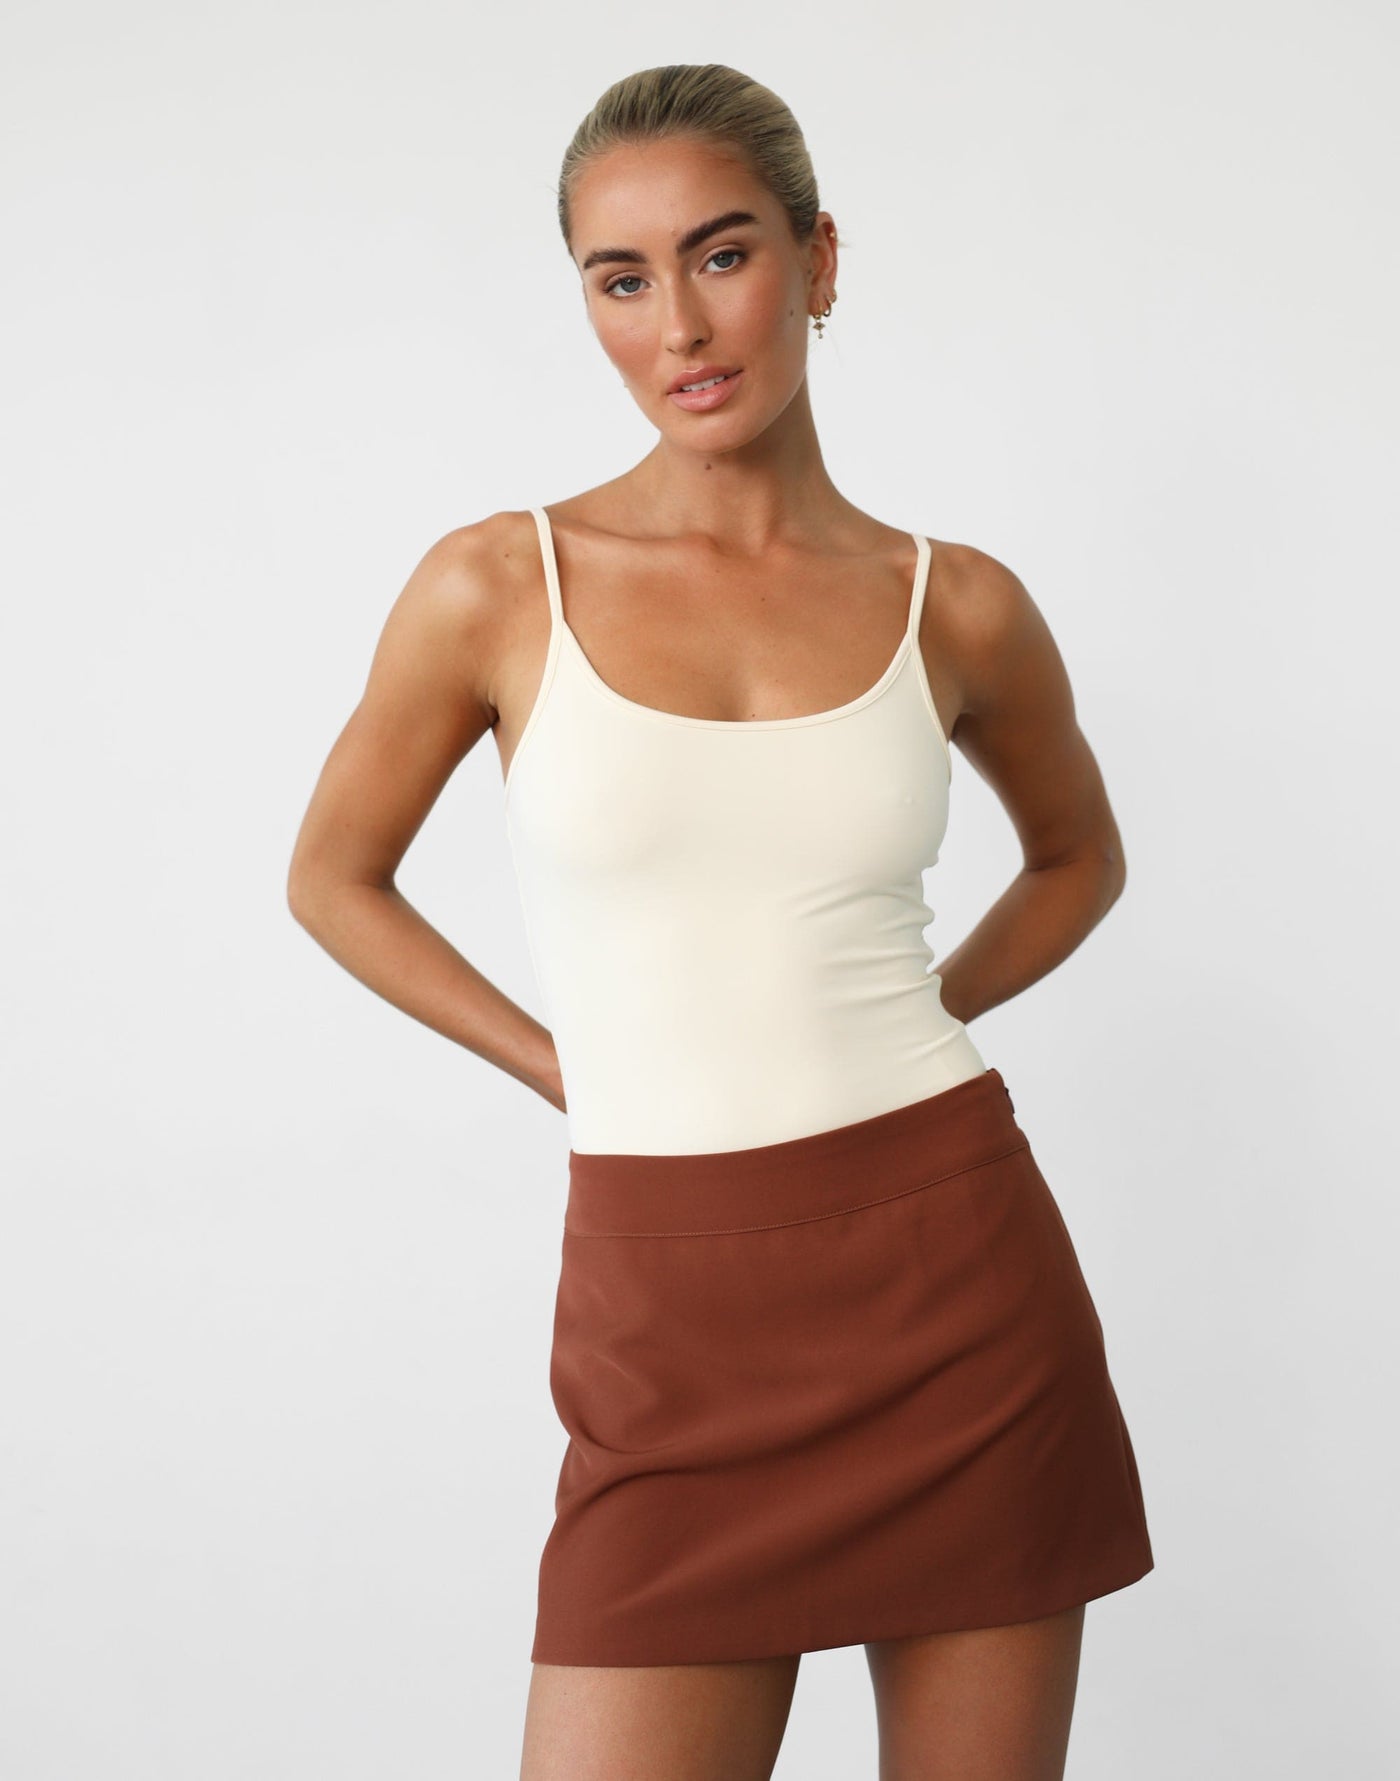 Leia Bodysuit (Cream) - Bodycon Thin Strap Bodysuit - Women's Top - Charcoal Clothing